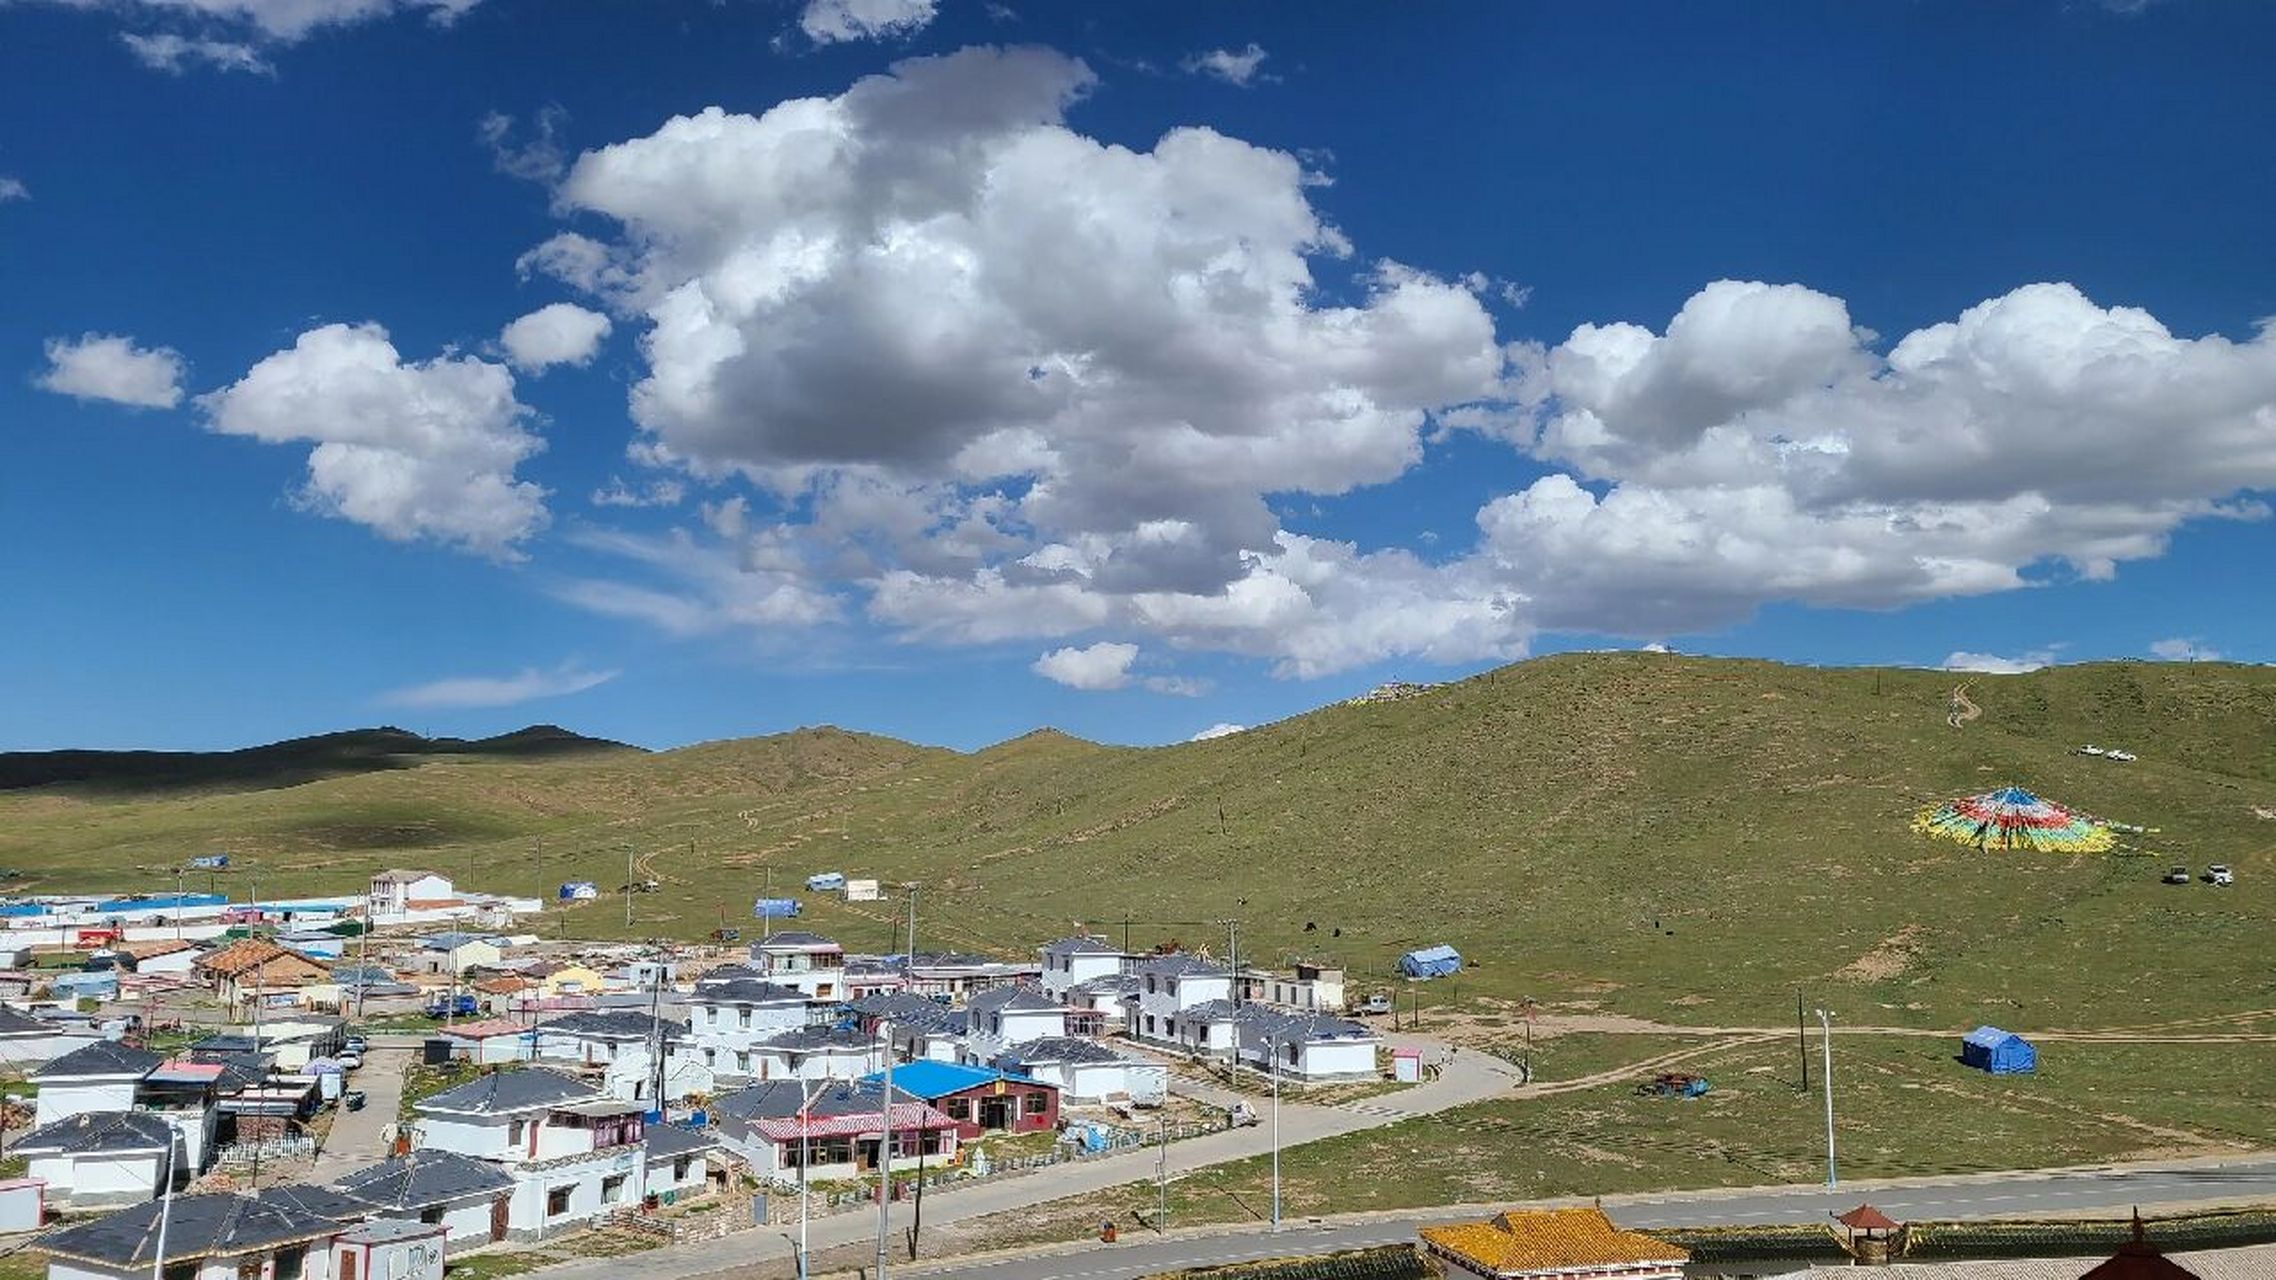 夏日西北游——玛多县 玛多,藏语黄河源头的意思